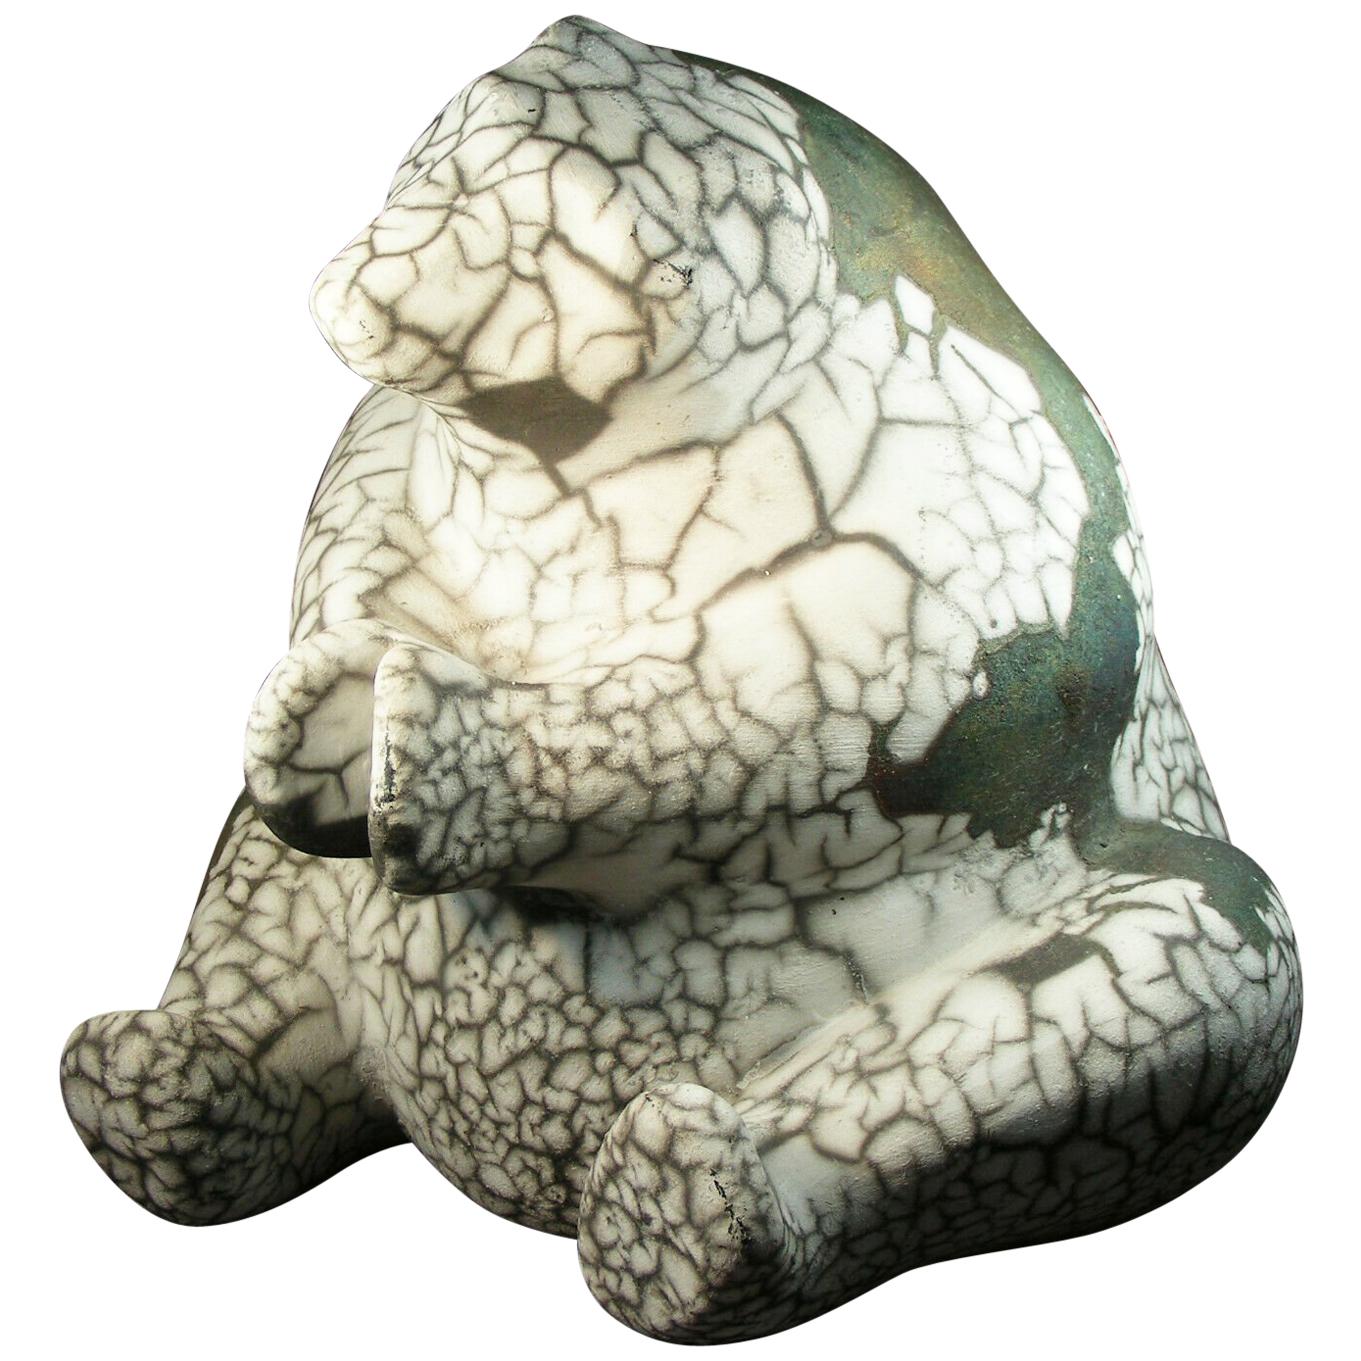 Raku Pottery "Polar Bear" by Tony Evans